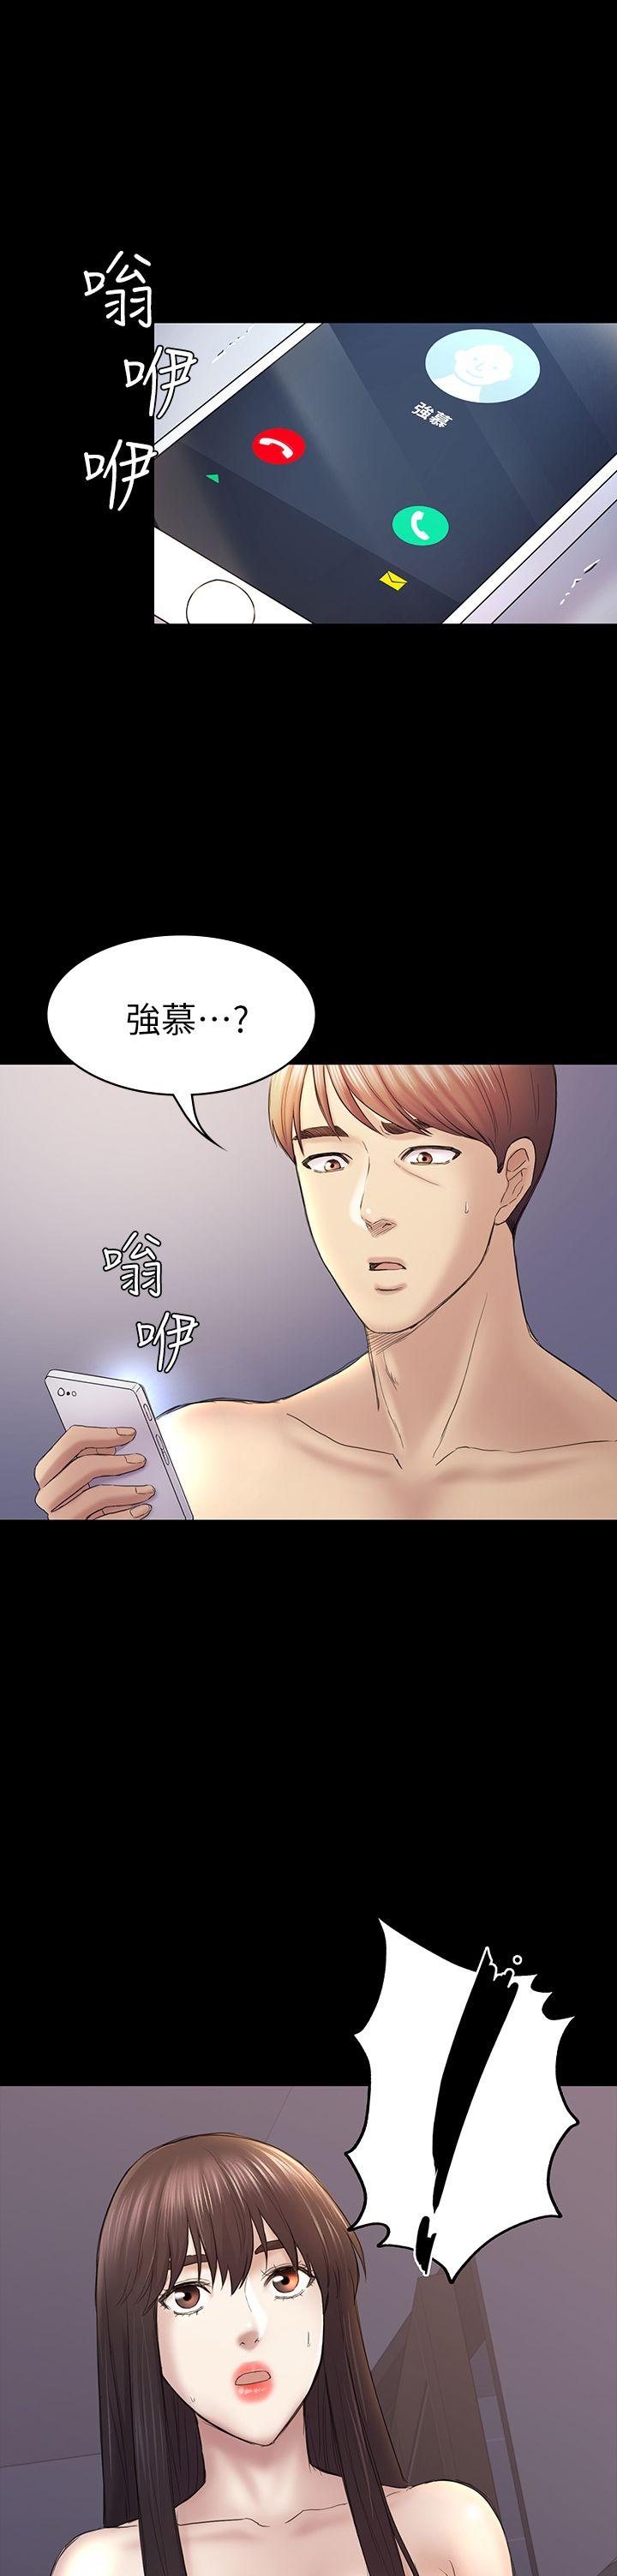 韩国污漫画 初戀陷阱 第44话-乱搞的下场 1